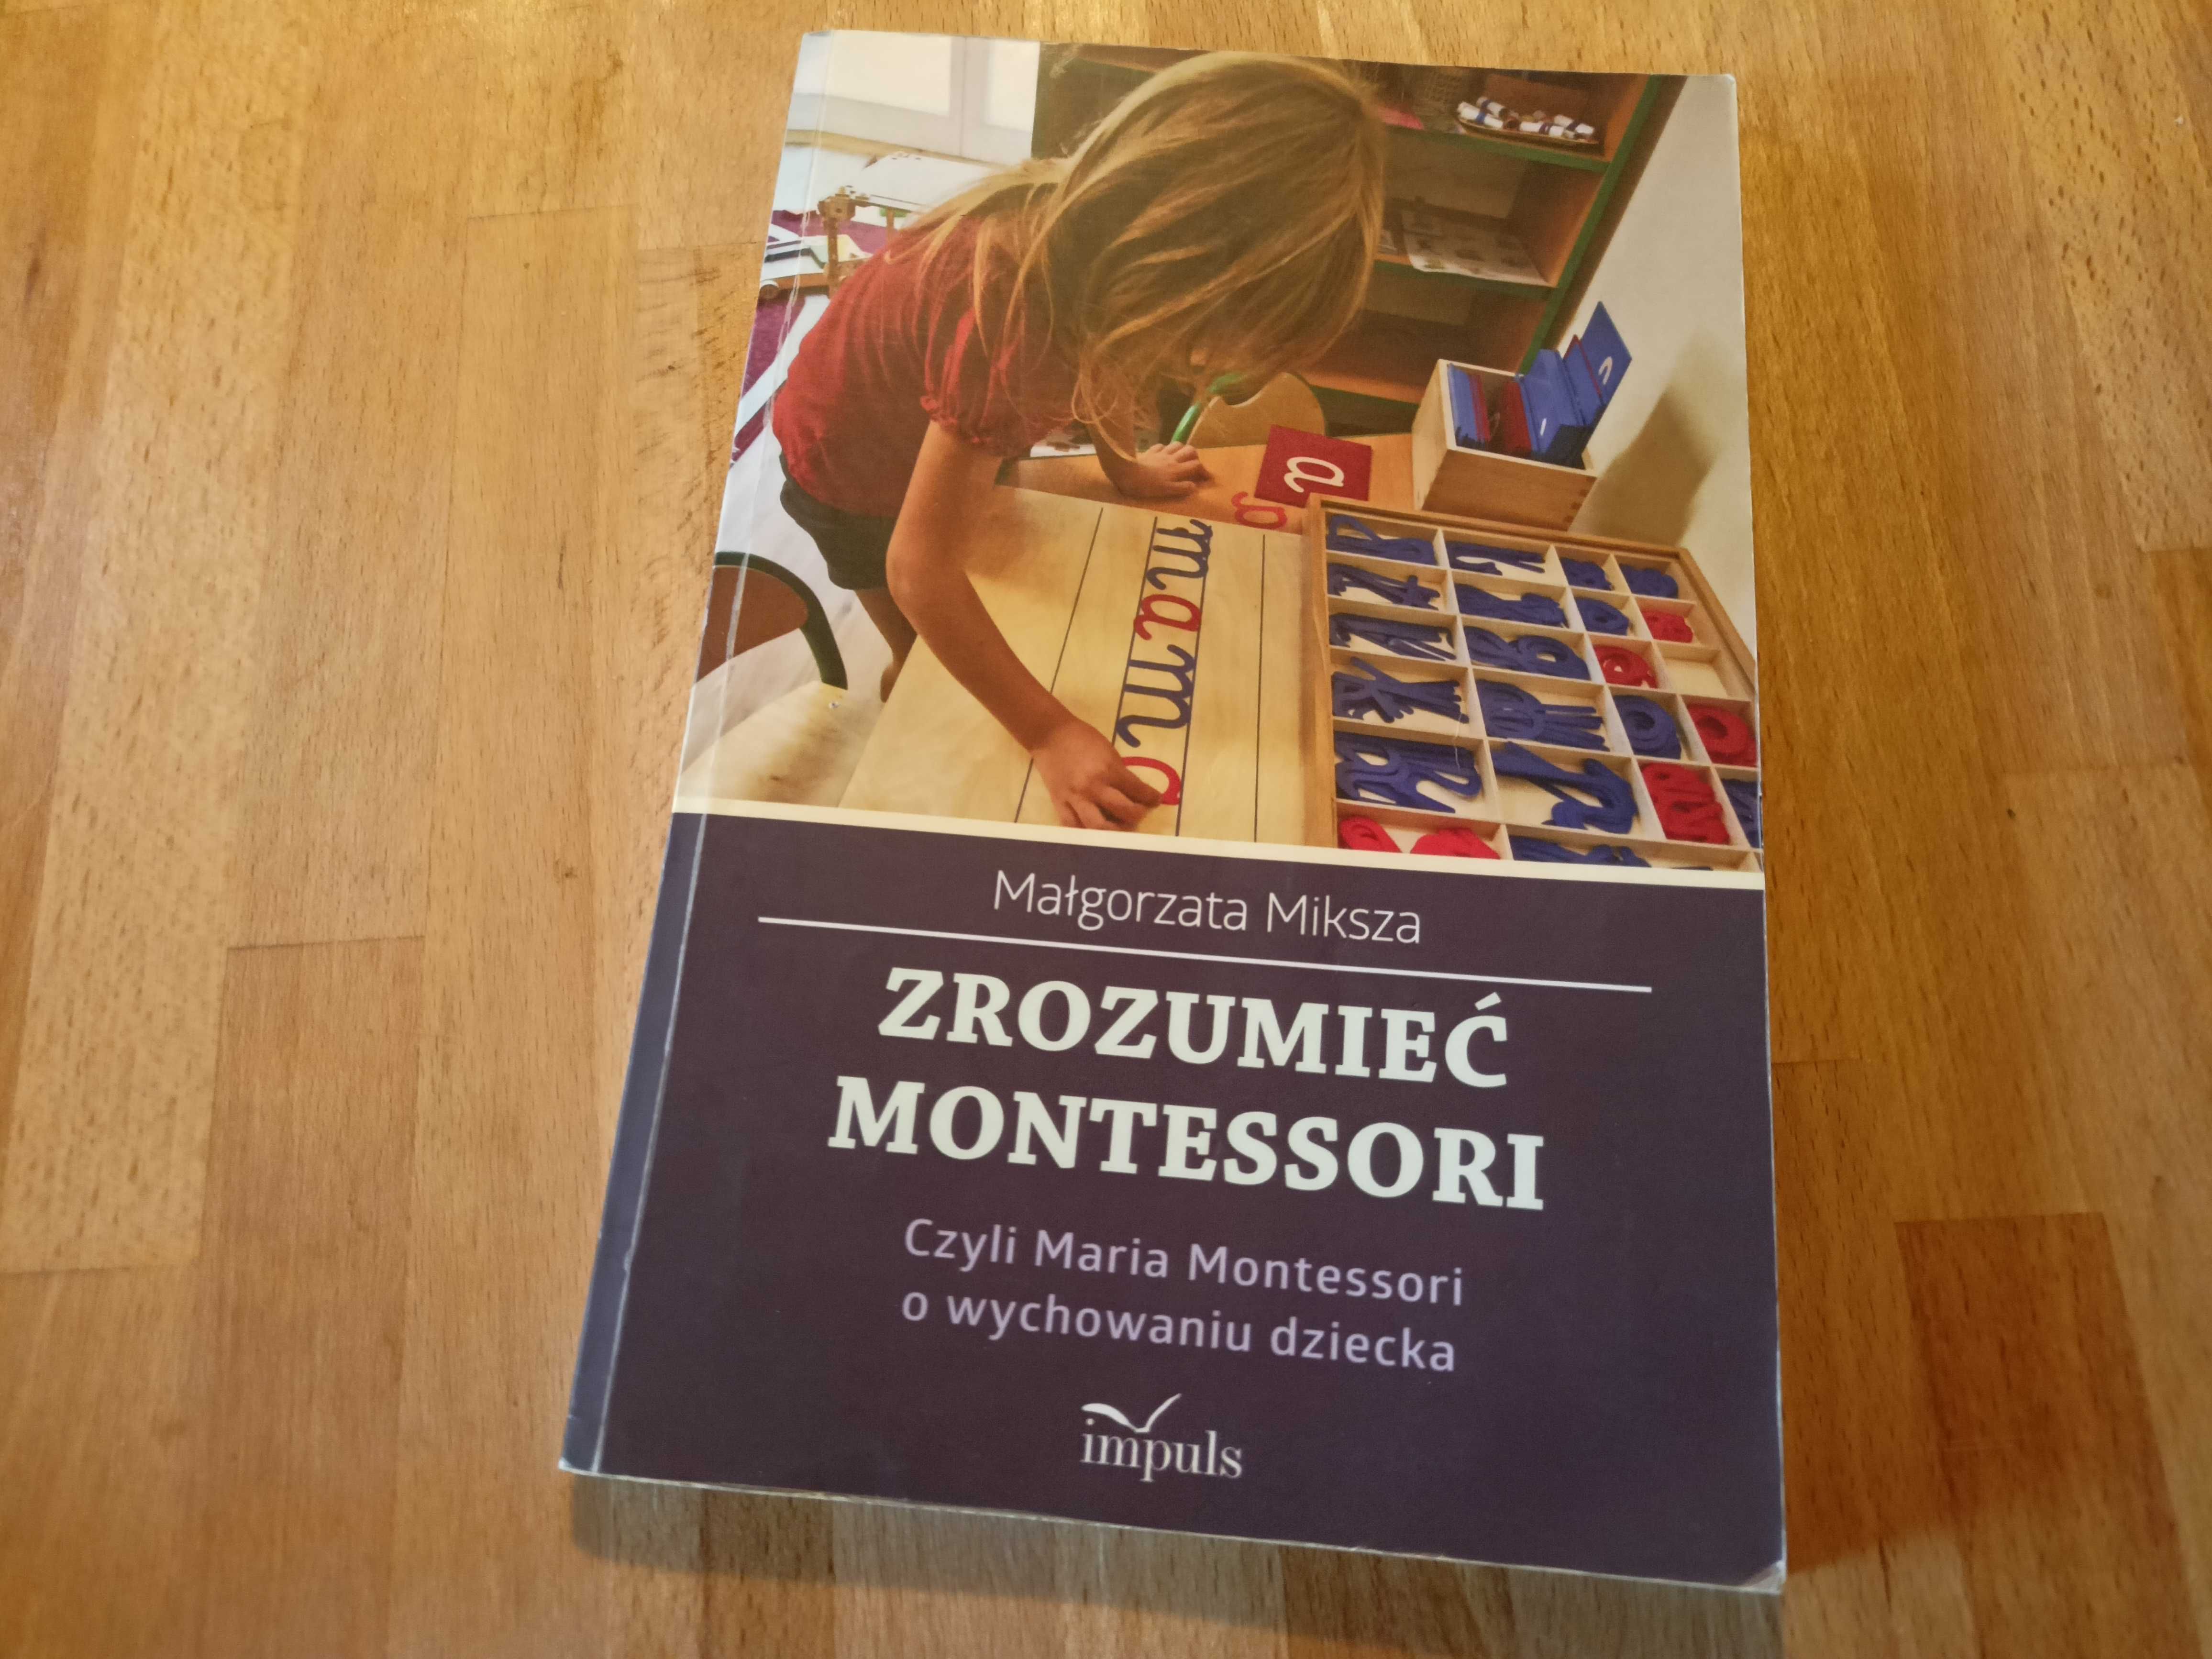 Zrozumieć Montessori czyli Maria Montessori o wychowaniu dziecka.